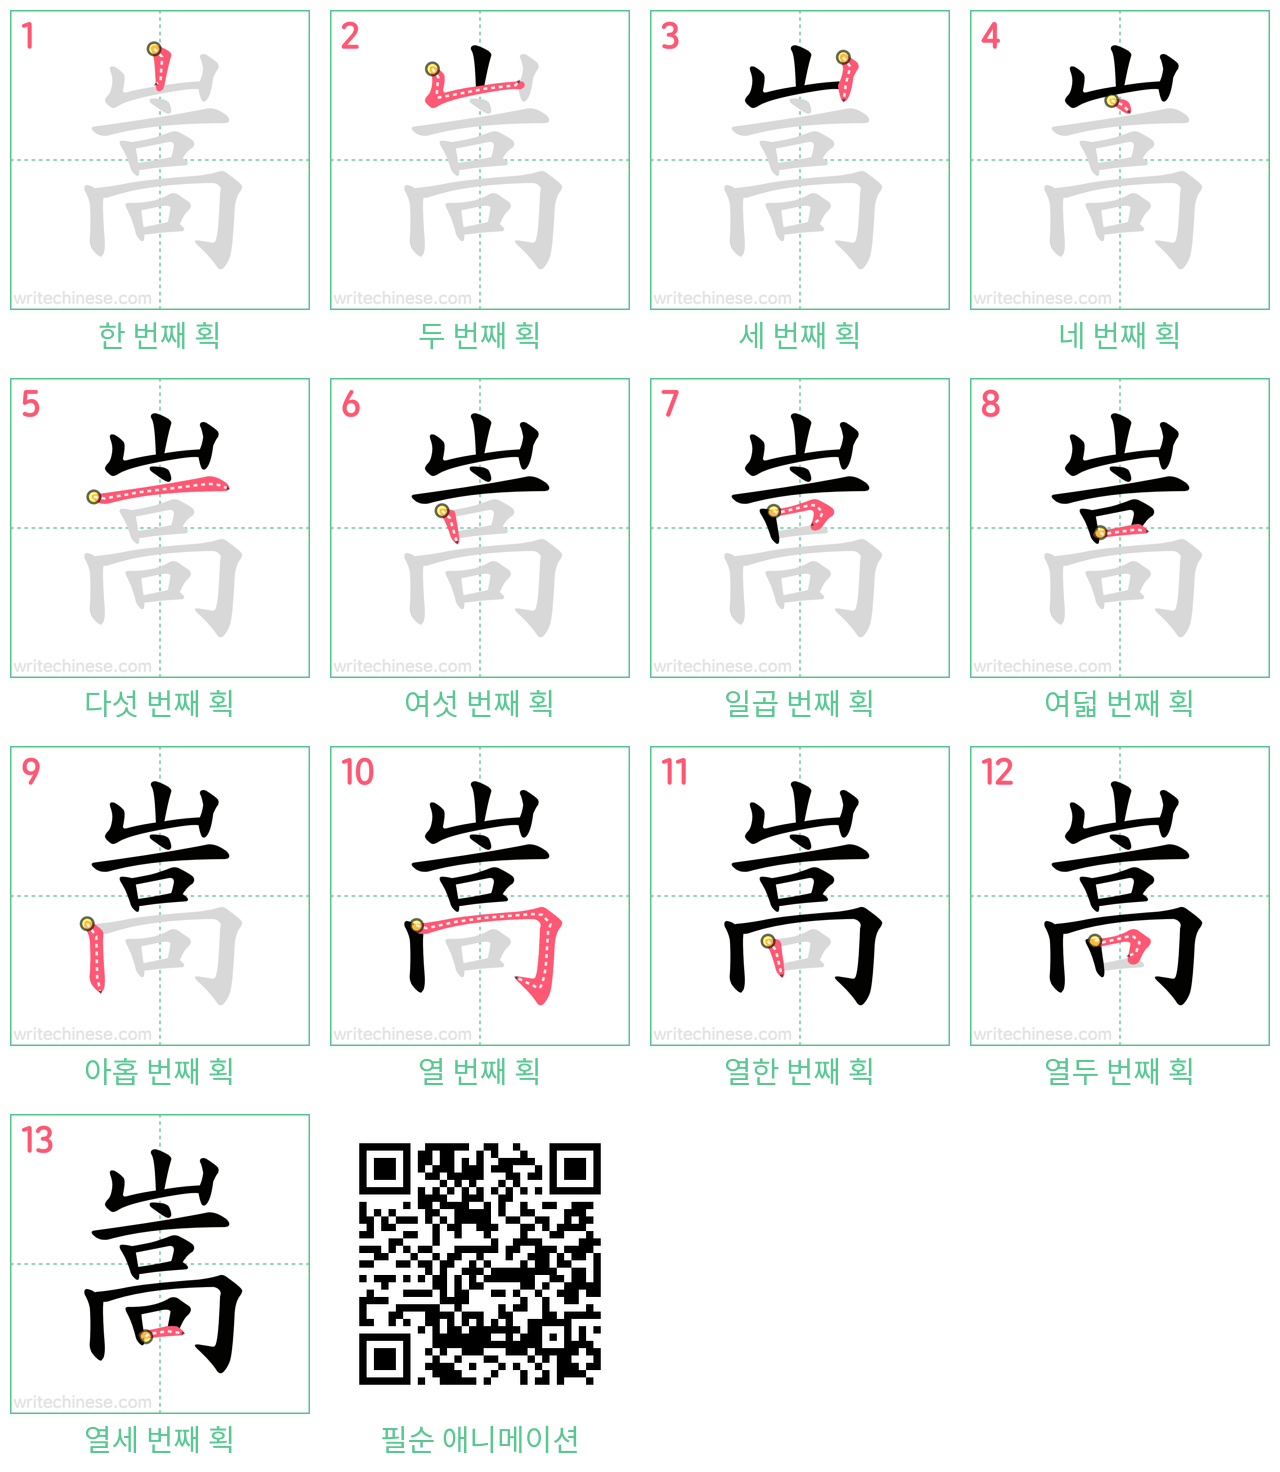 嵩 step-by-step stroke order diagrams